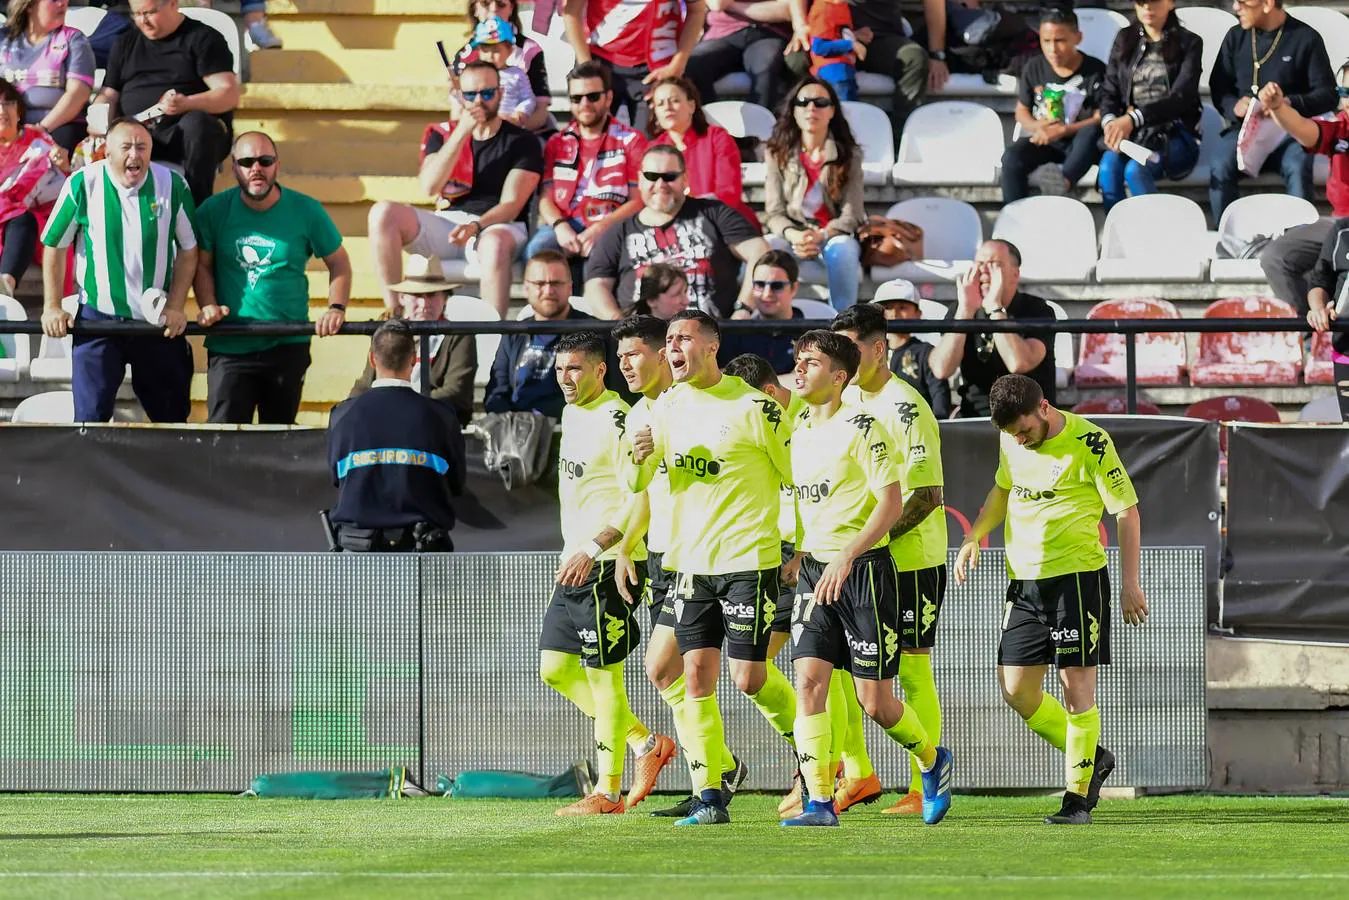 Espectacular remontada del Córdoba CF. El bloque cordobesista, acompañado por 500 aficionados blanquiverdes, ha ganado al líder de Segunda en Vallecas (1-2)